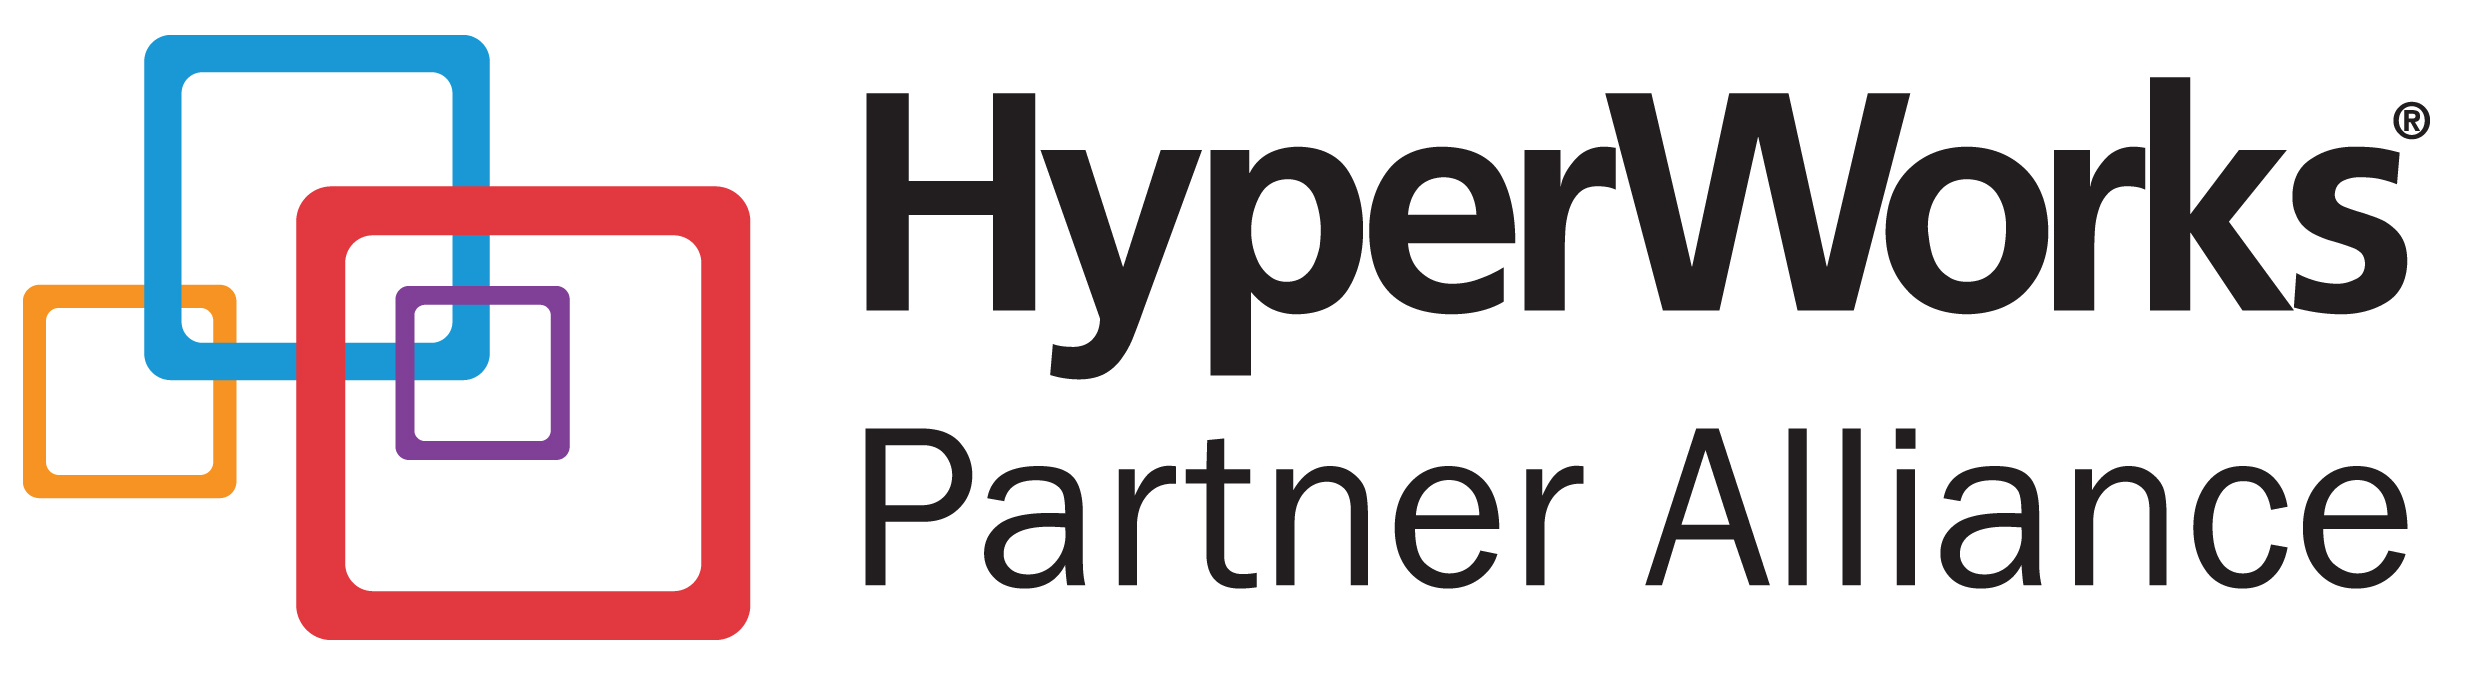 HyperWorks Partner Alliance